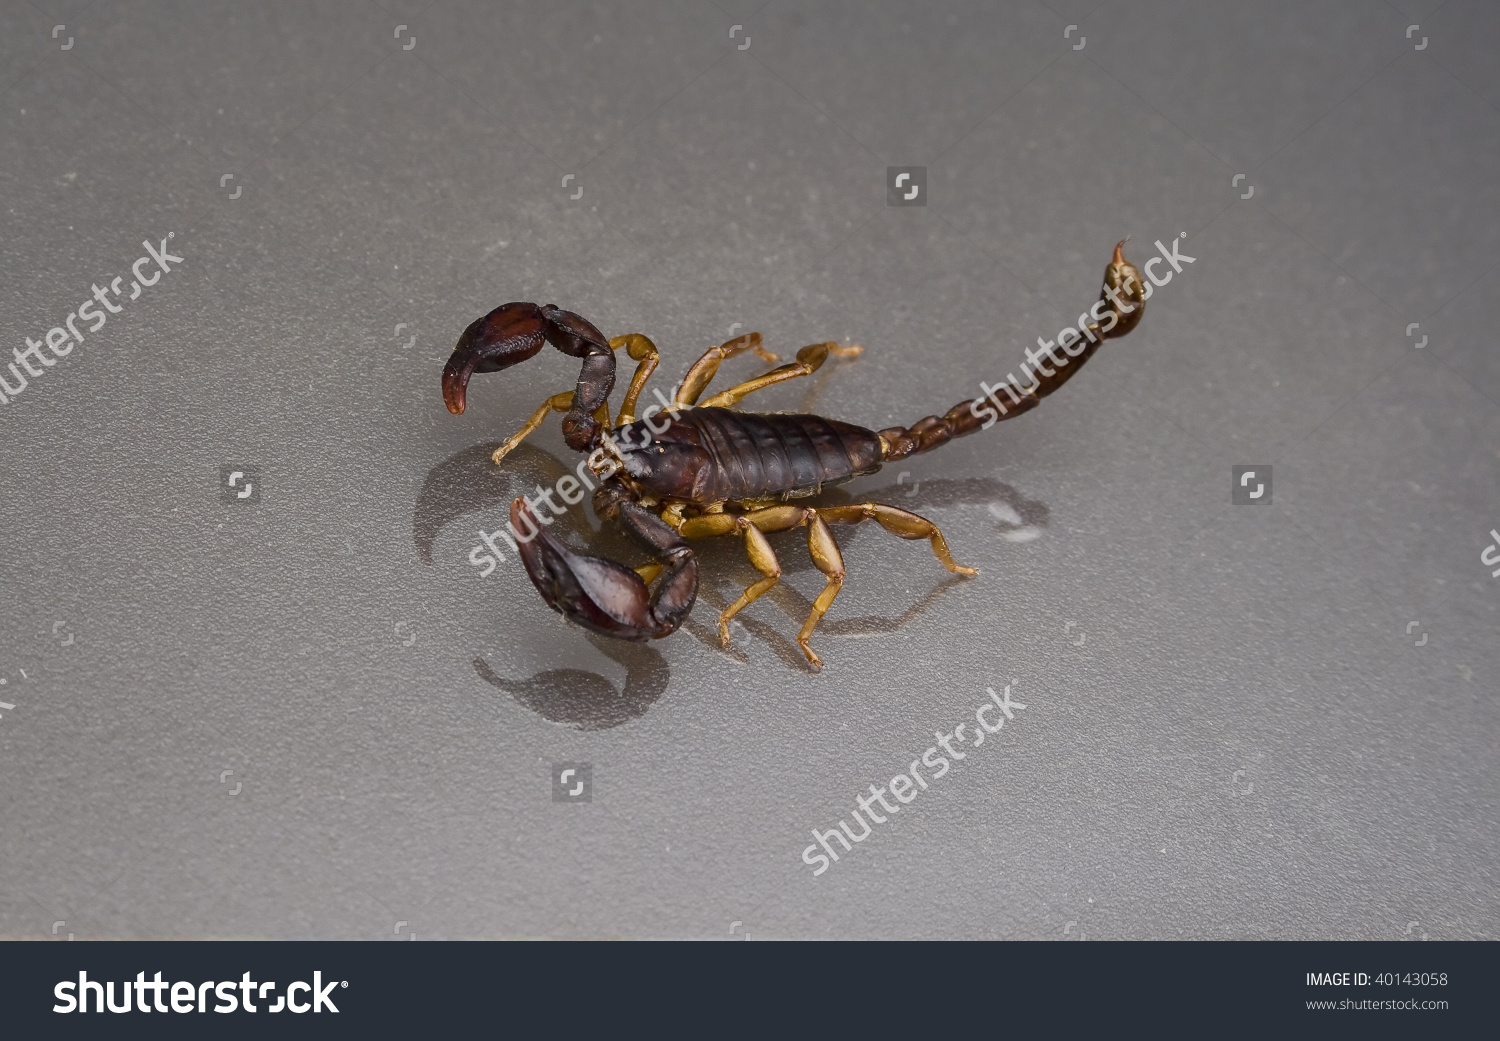 Scorpion Found In Umbria (It) Identified As An Euscorpius Italicus.